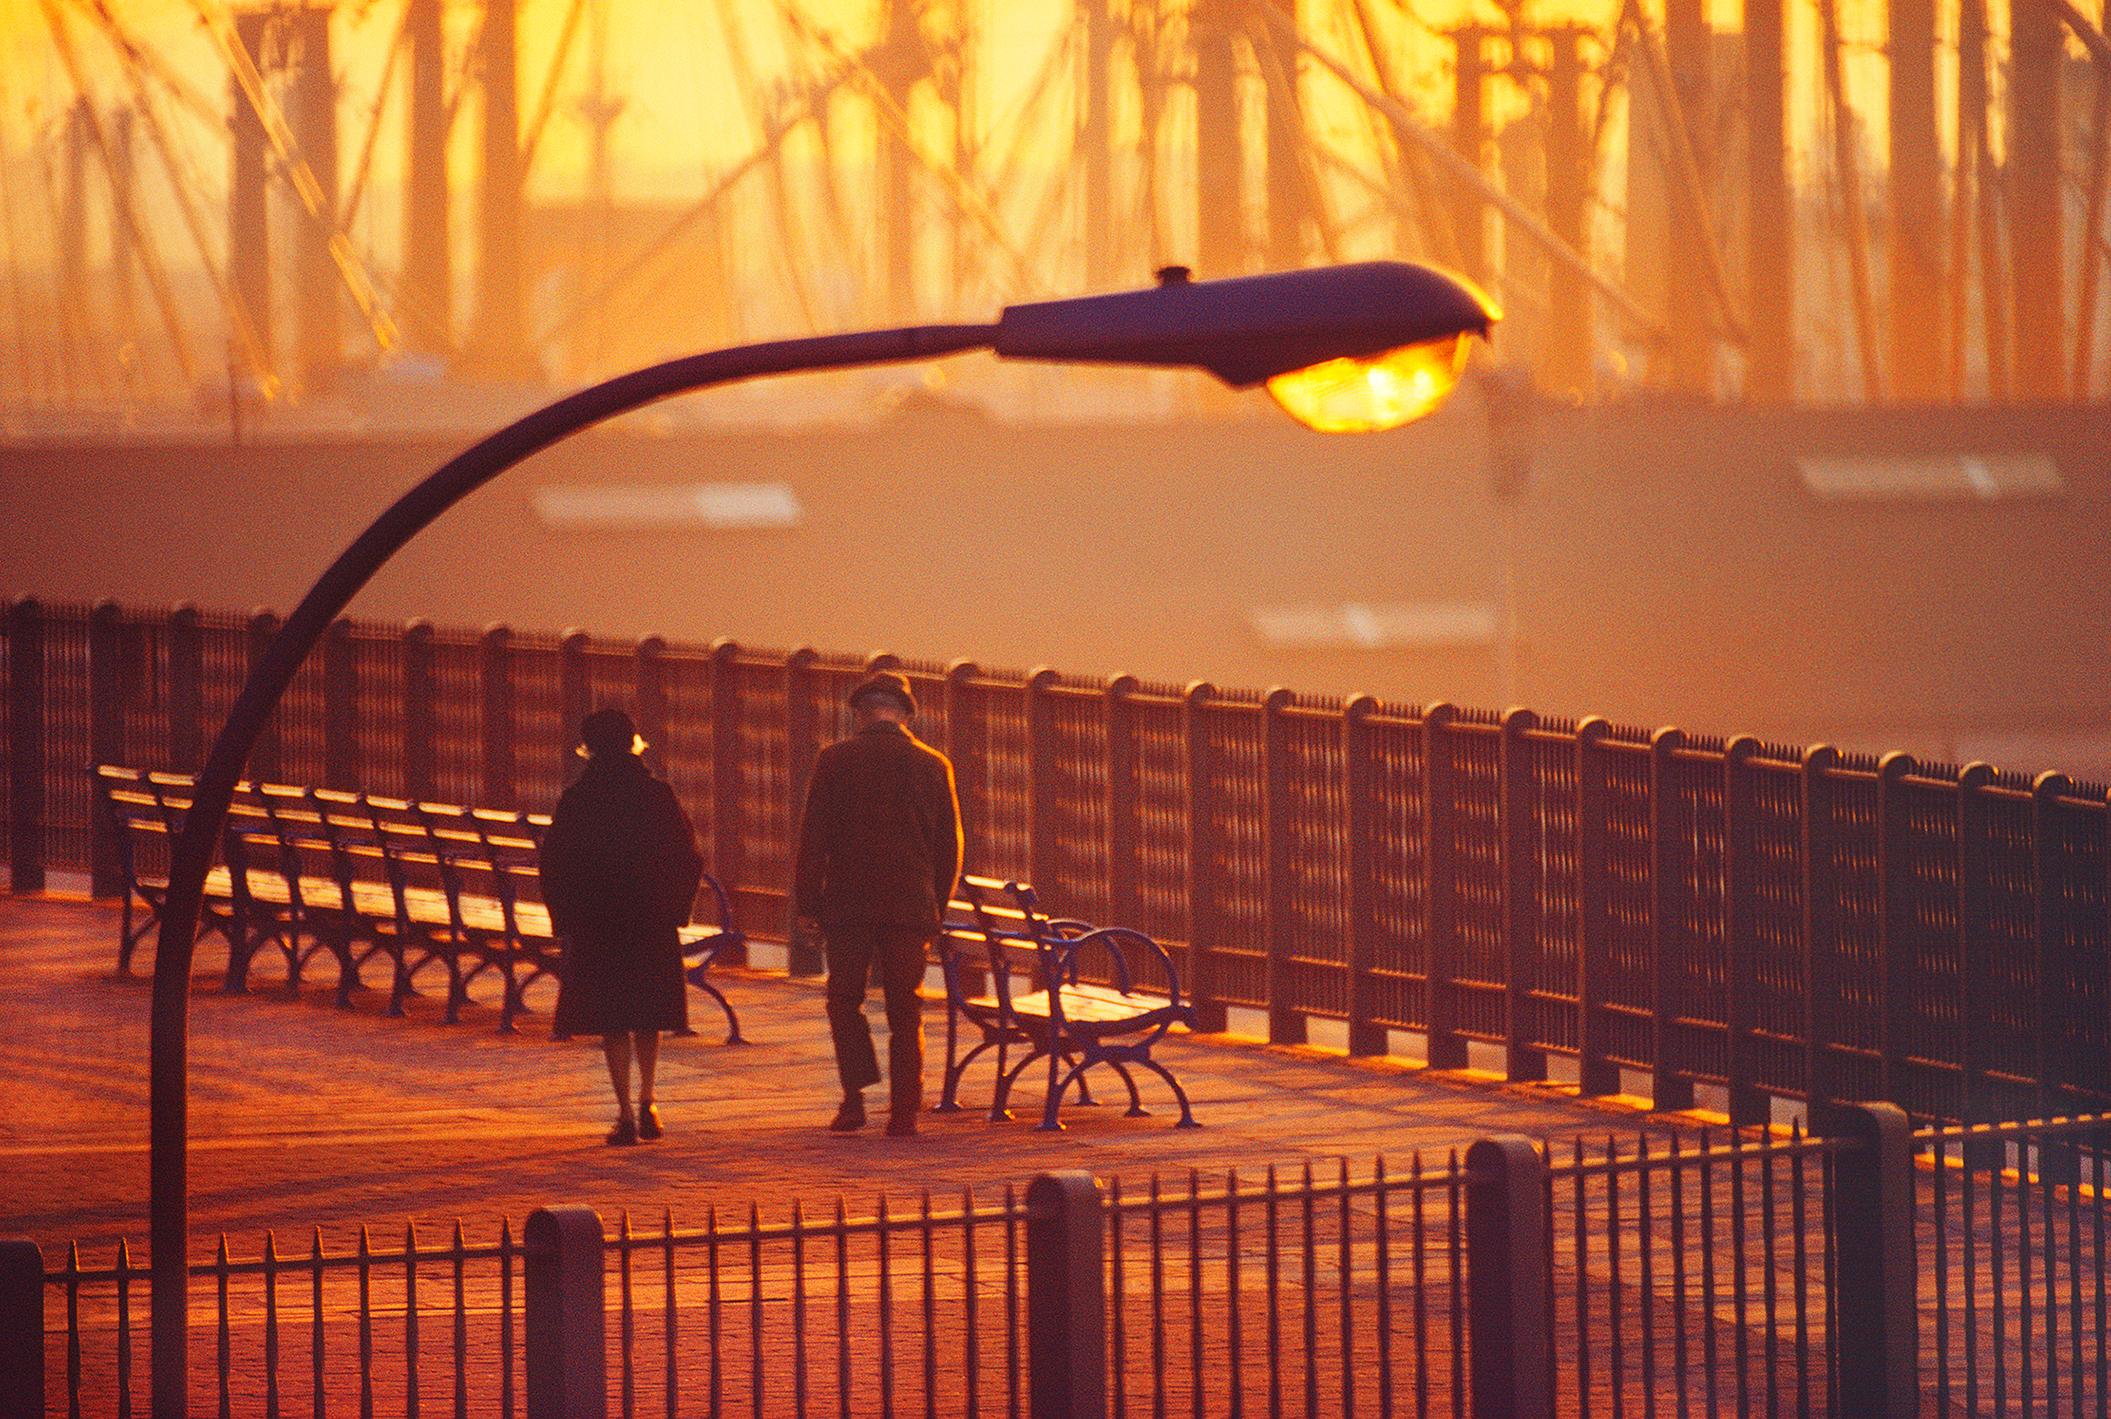 Old New York, Brooklyn Heights Promenade, 1972, in magisches goldenes Licht getaucht.  Es entsteht ein Gefühl der Einsamkeit, das an die Gemälde von Edward Hopper erinnert, in denen die kleinen Figuren von der Umgebung in den Schatten gestellt